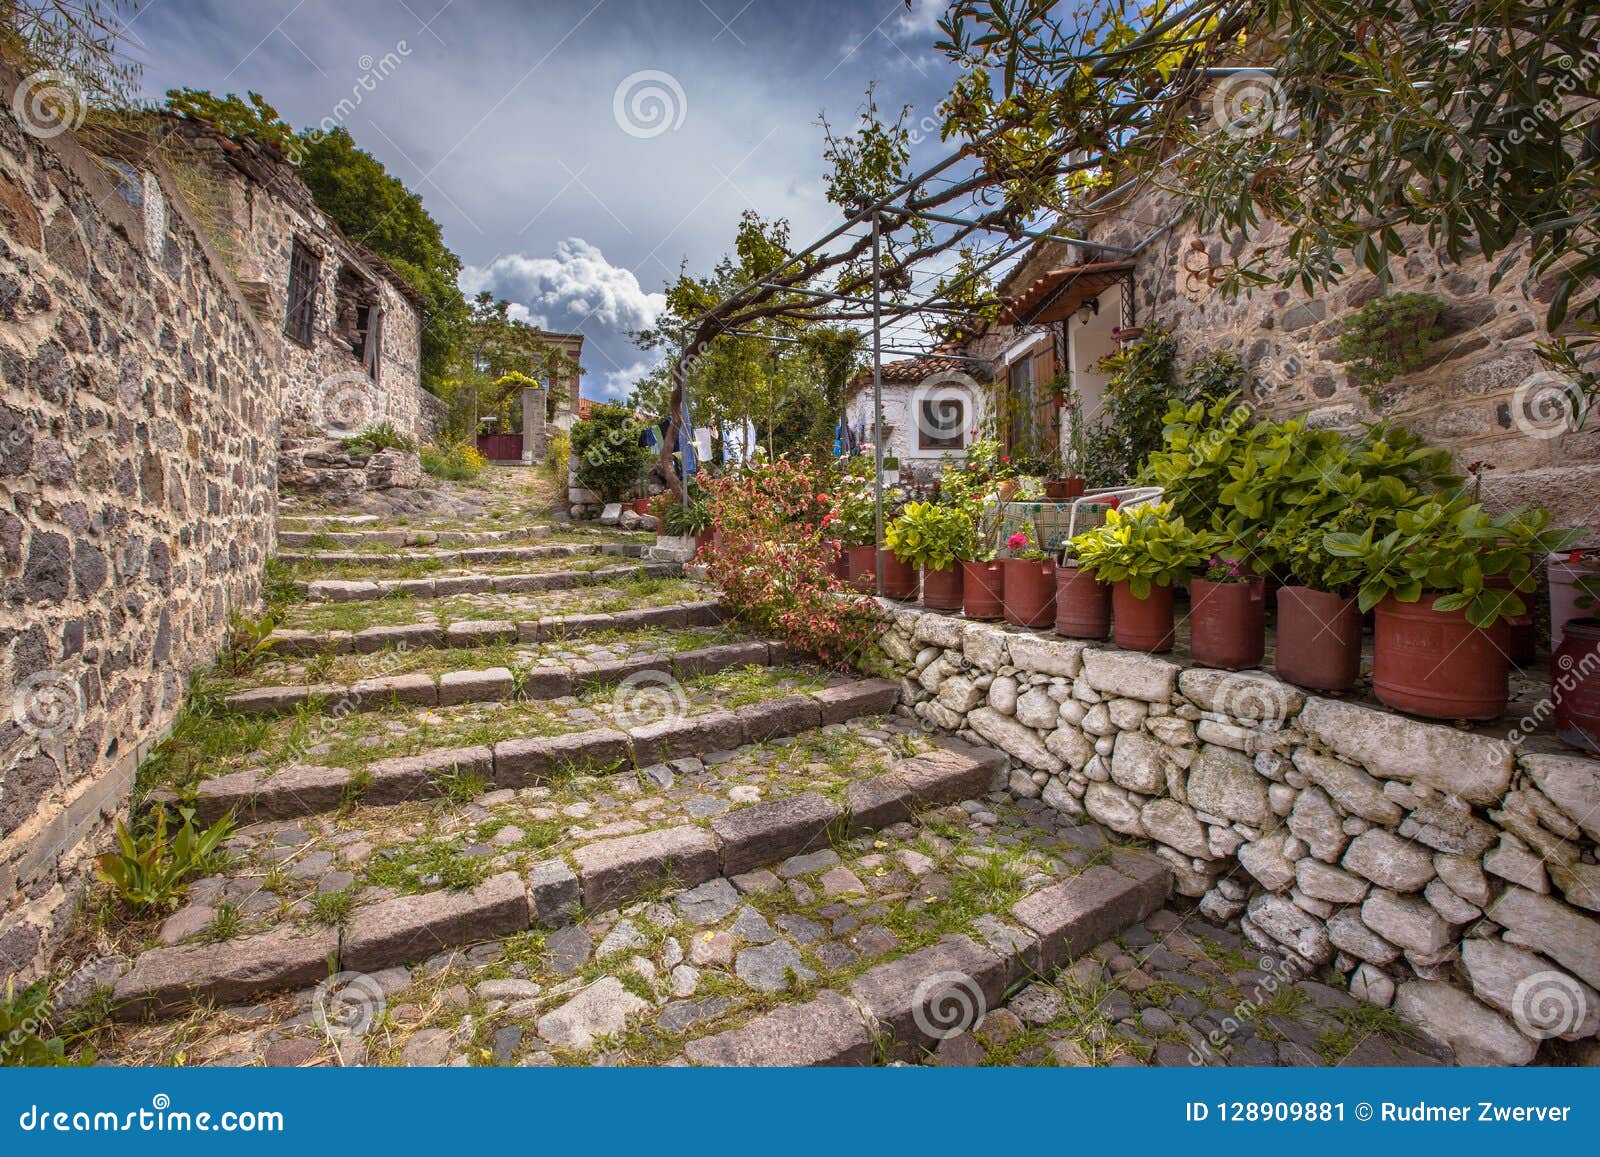 Escaleras De Piedra Con Los Jardines En La Isla Grecia De Lesbos Imagen De Archivo Imagen De Piedra Escaleras 128909881